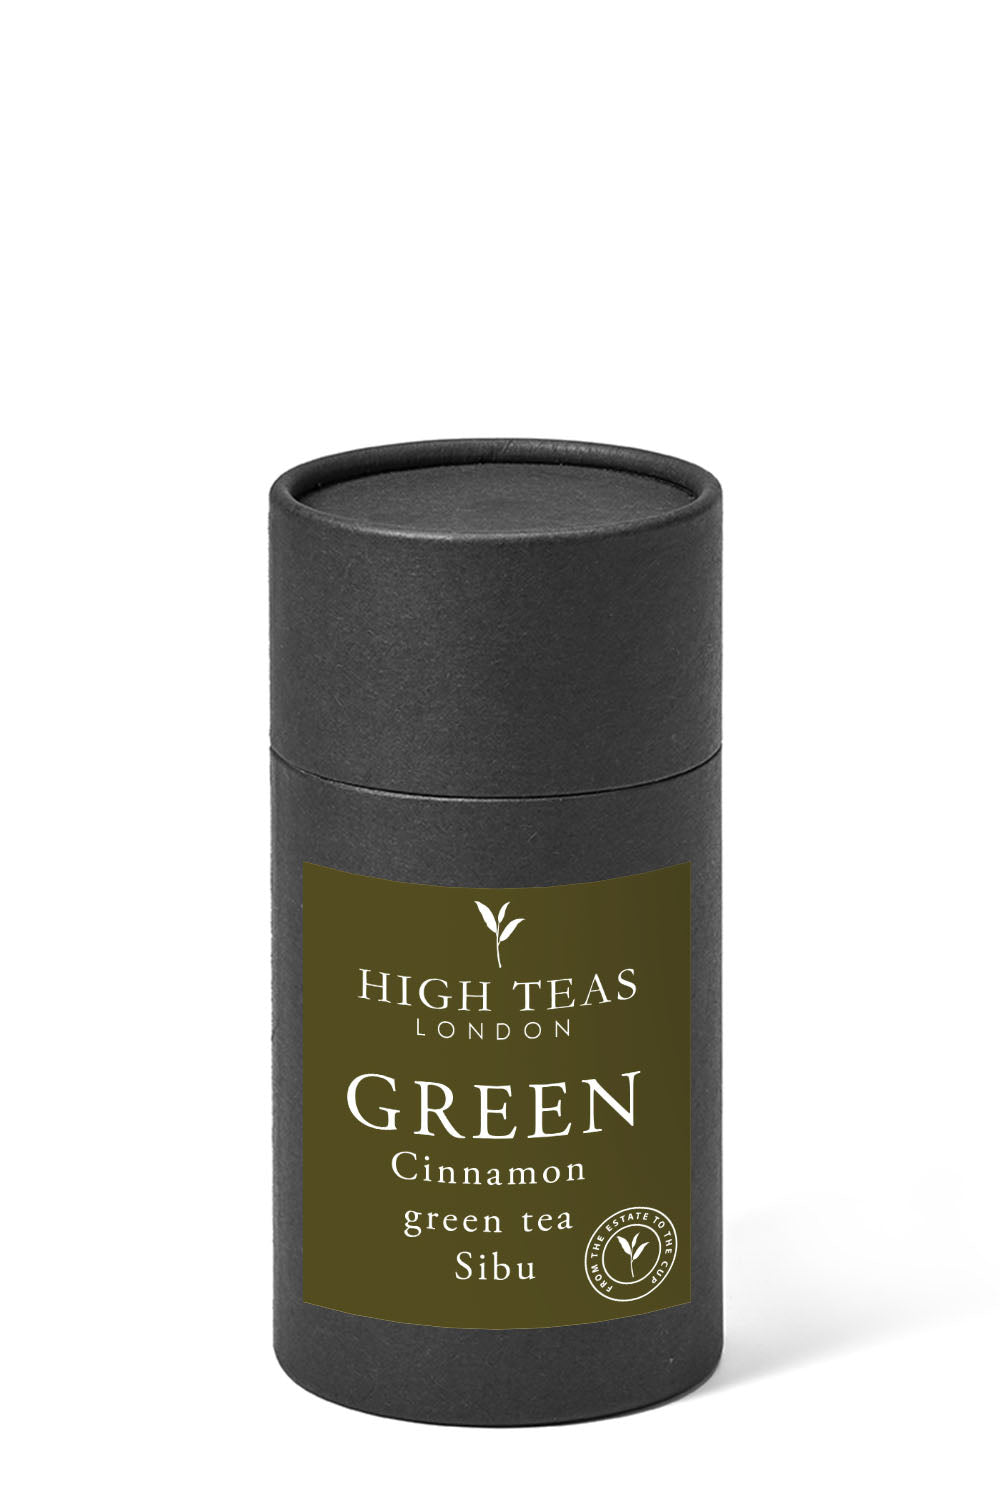 Cinnamon Sibu Green Tea-60g gift-Loose Leaf Tea-High Teas